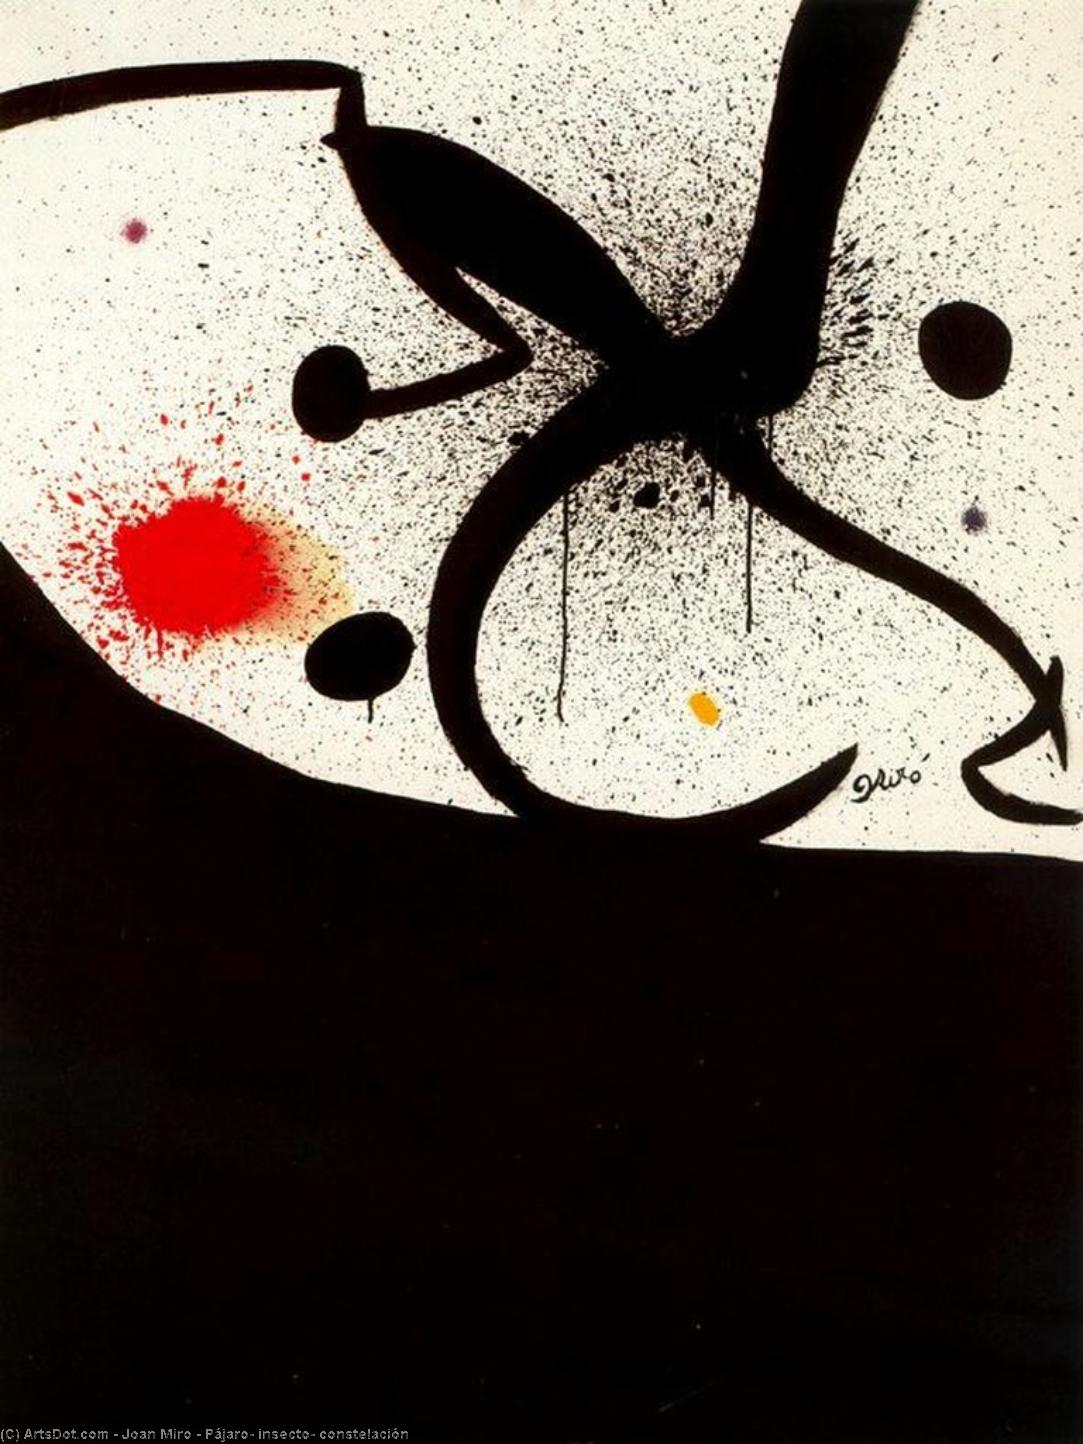 WikiOO.org - Encyclopedia of Fine Arts - Maalaus, taideteos Joan Miro - Pájaro, insecto, constelación